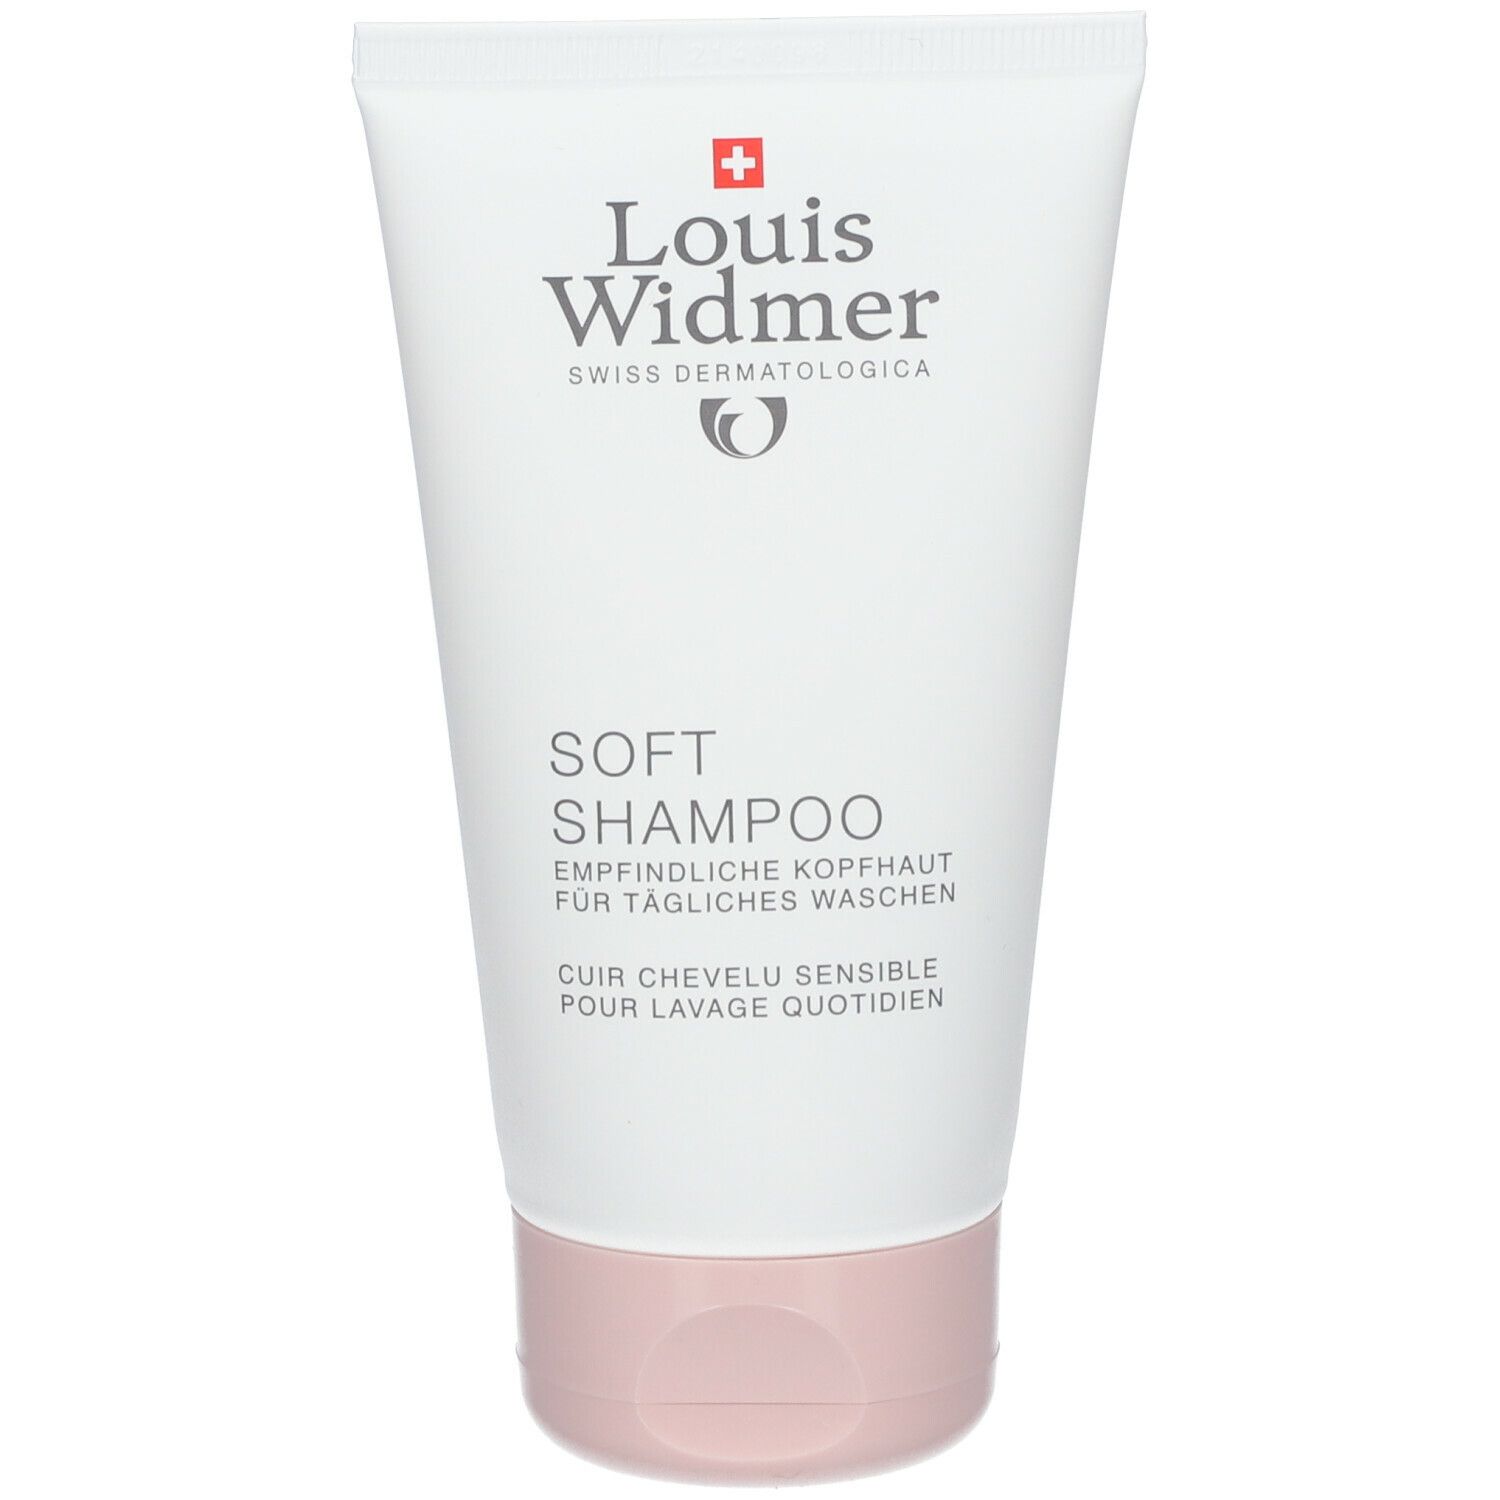 Louis Widmer Soft Shampoo + Panthenol leicht parfümiert